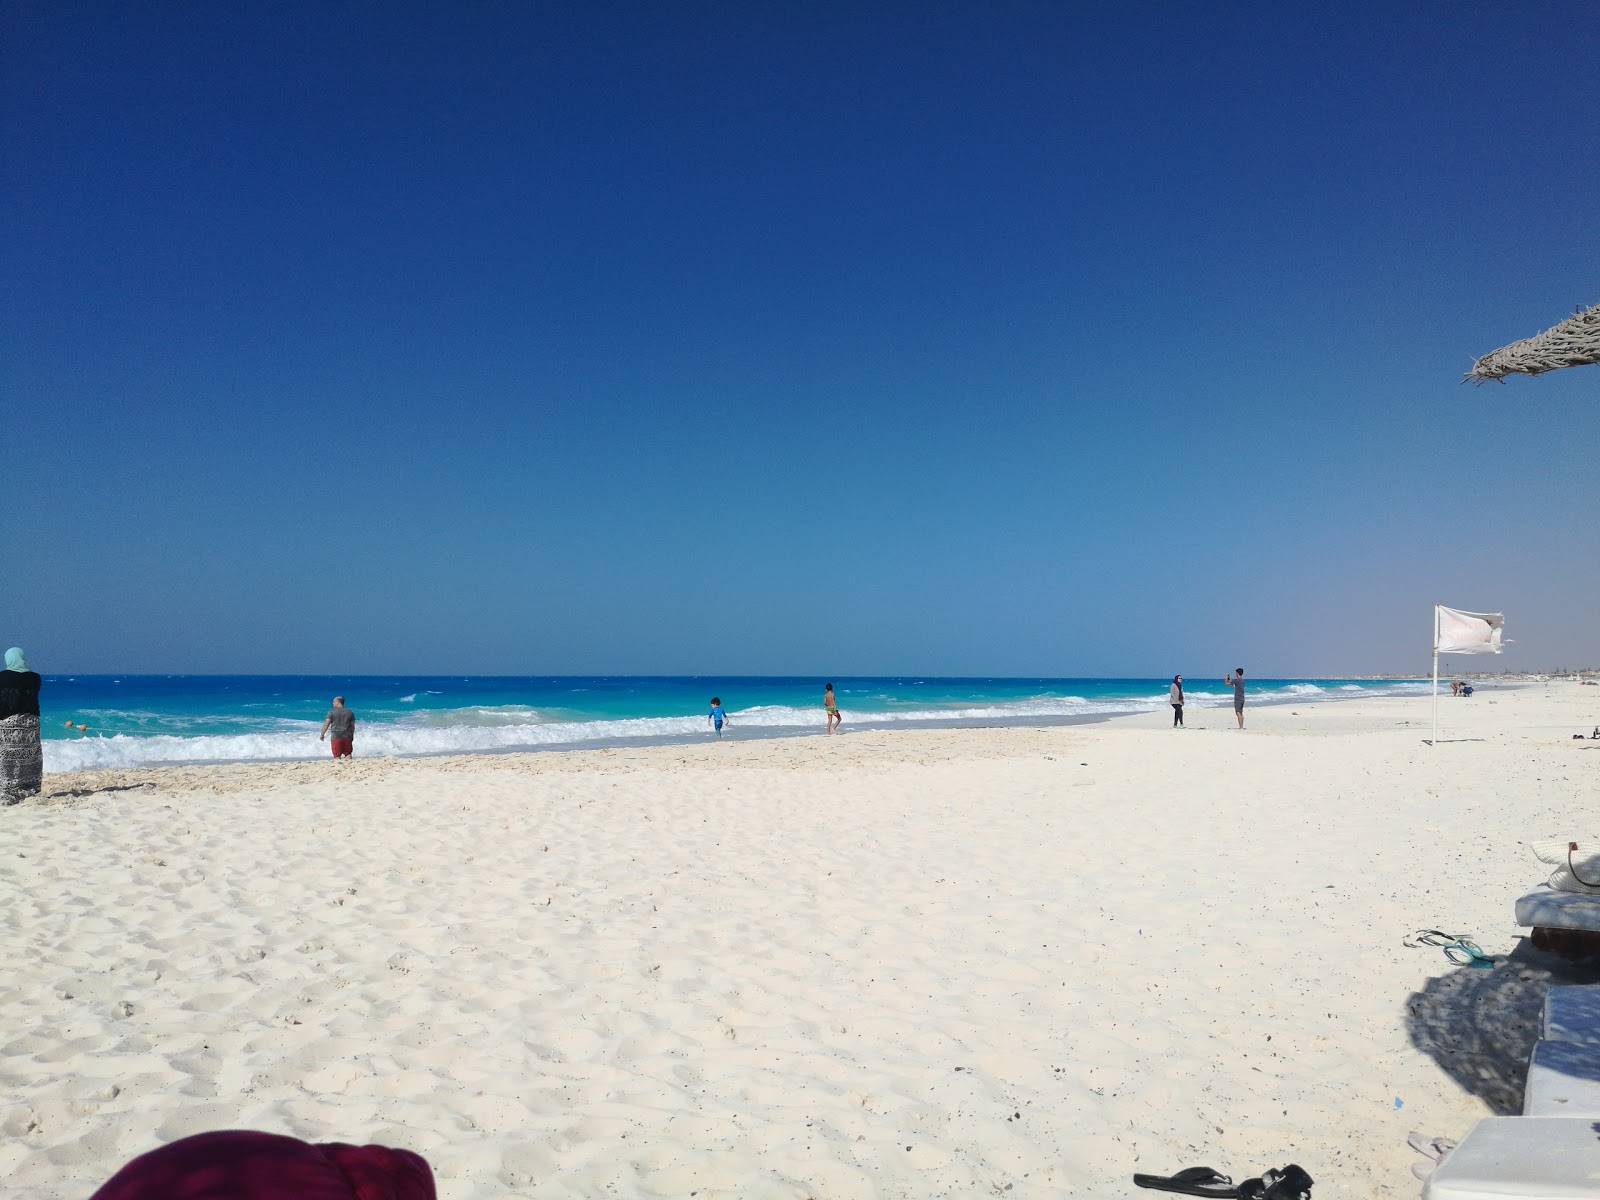 Fotografie cu Assiut University Beach cu o suprafață de nisip alb